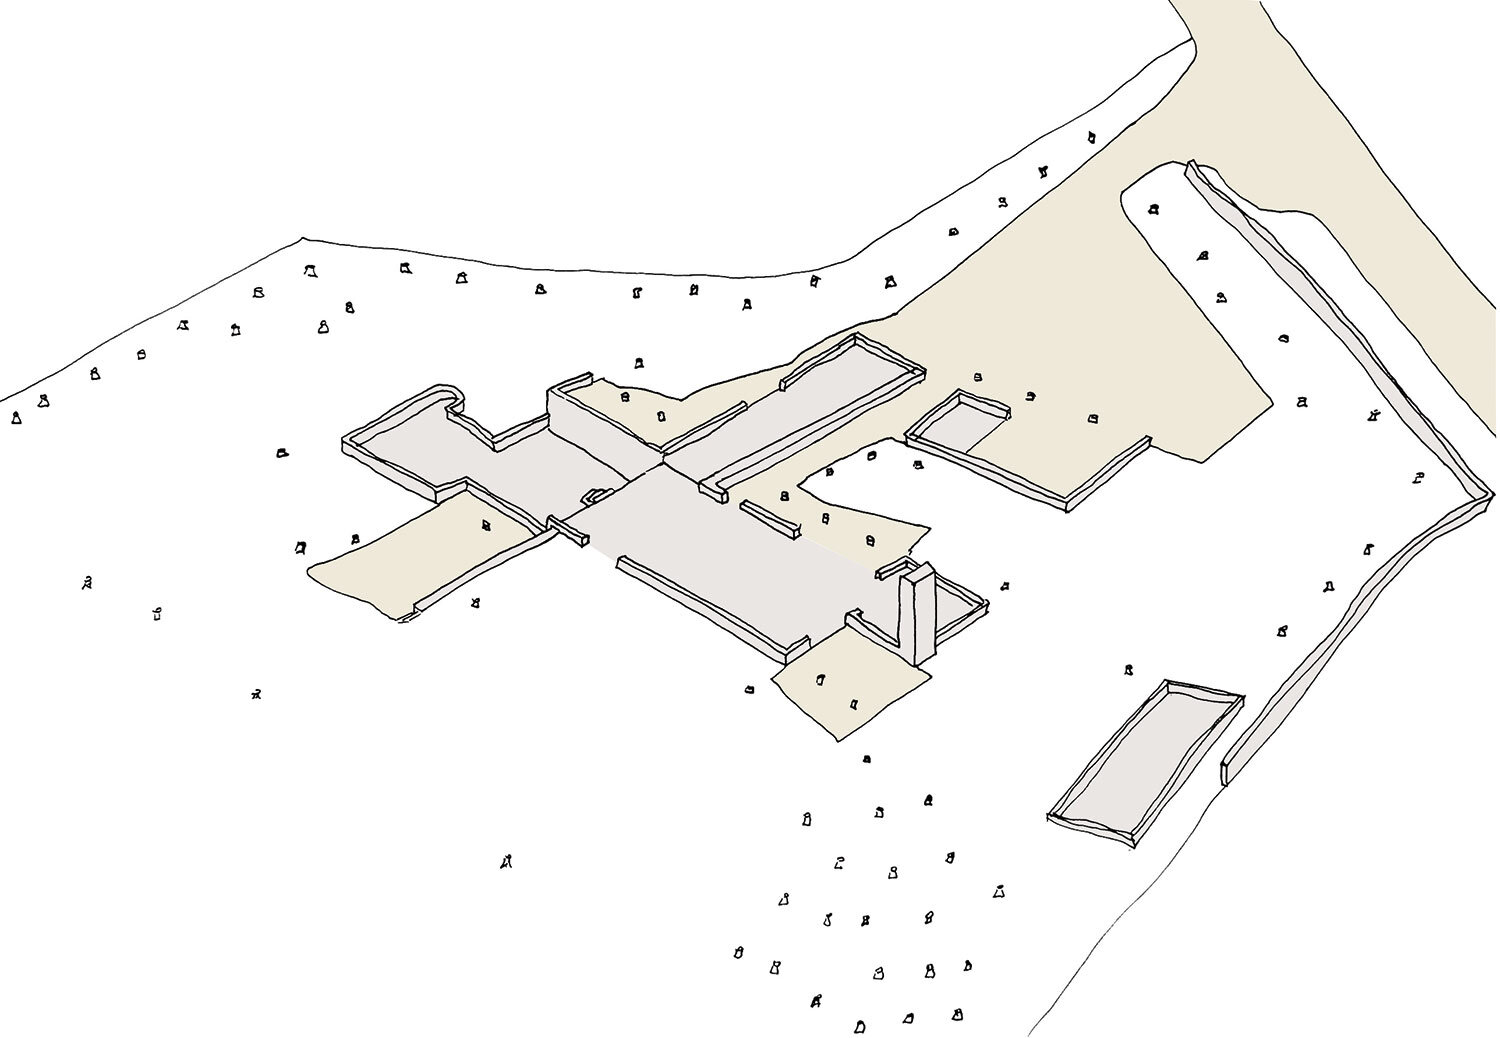 Frome-somerset-passivhaus-prewett-bizley-architects-landscape-sketch.jpg